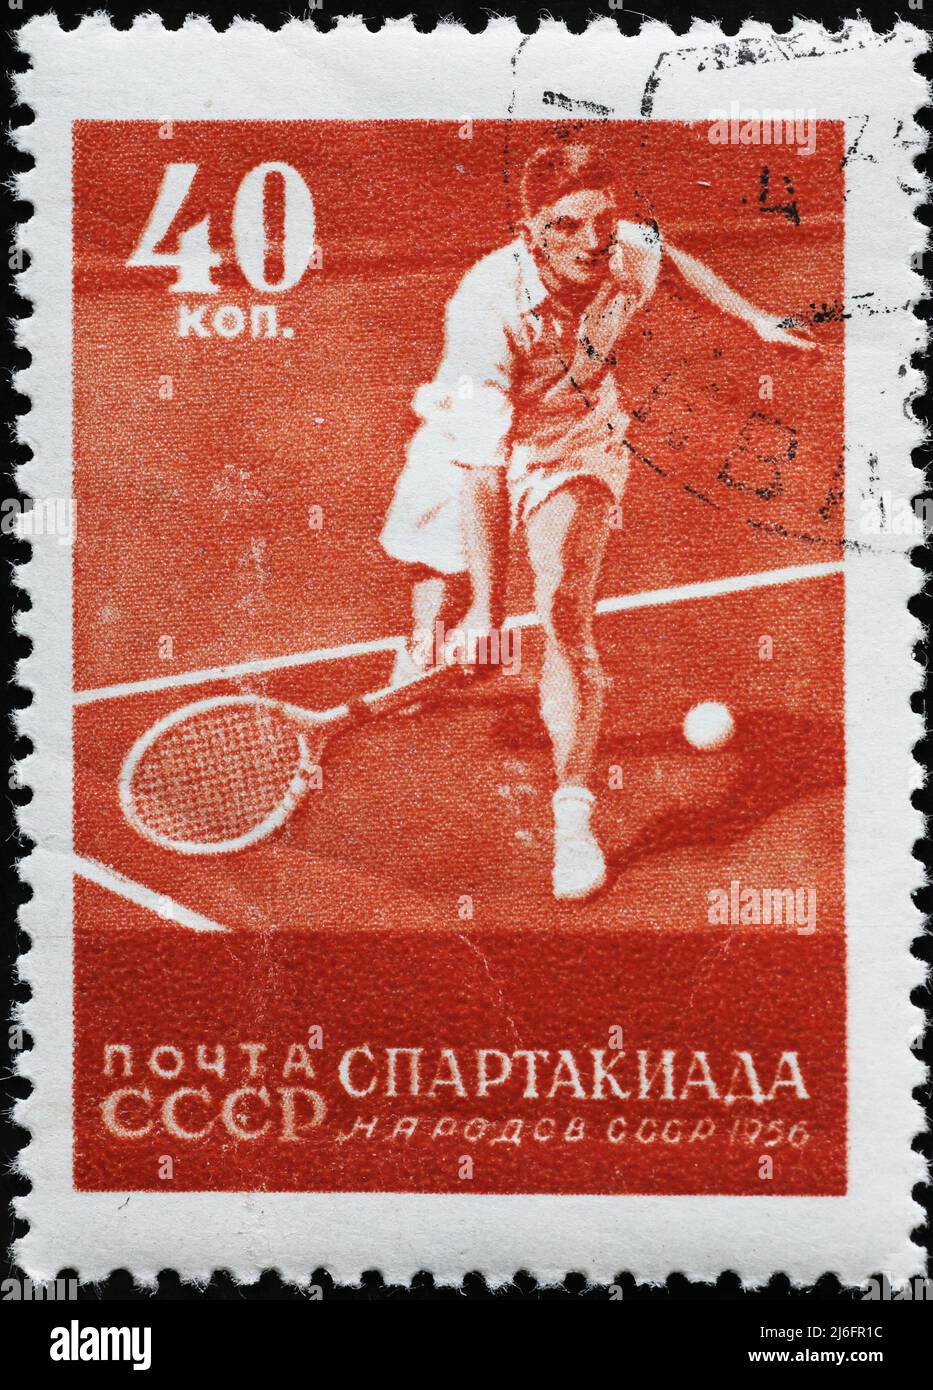 Joueur de tennis sur timbre-poste russe d'époque Banque D'Images